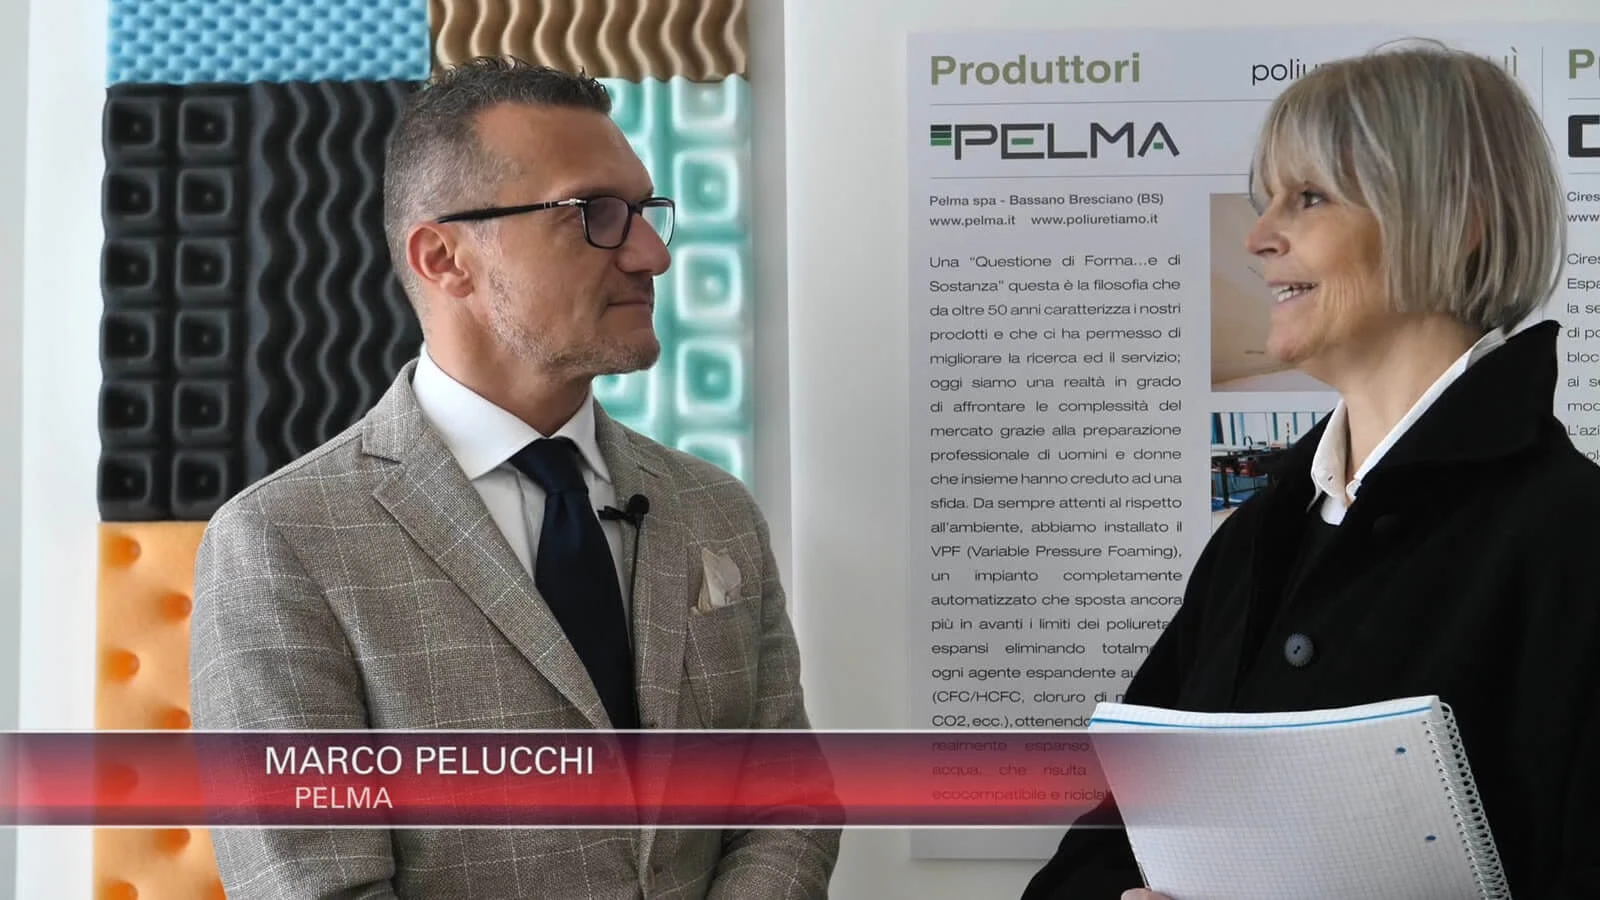 Pelma, líder en poliuretano en la Milan Design Week 2019